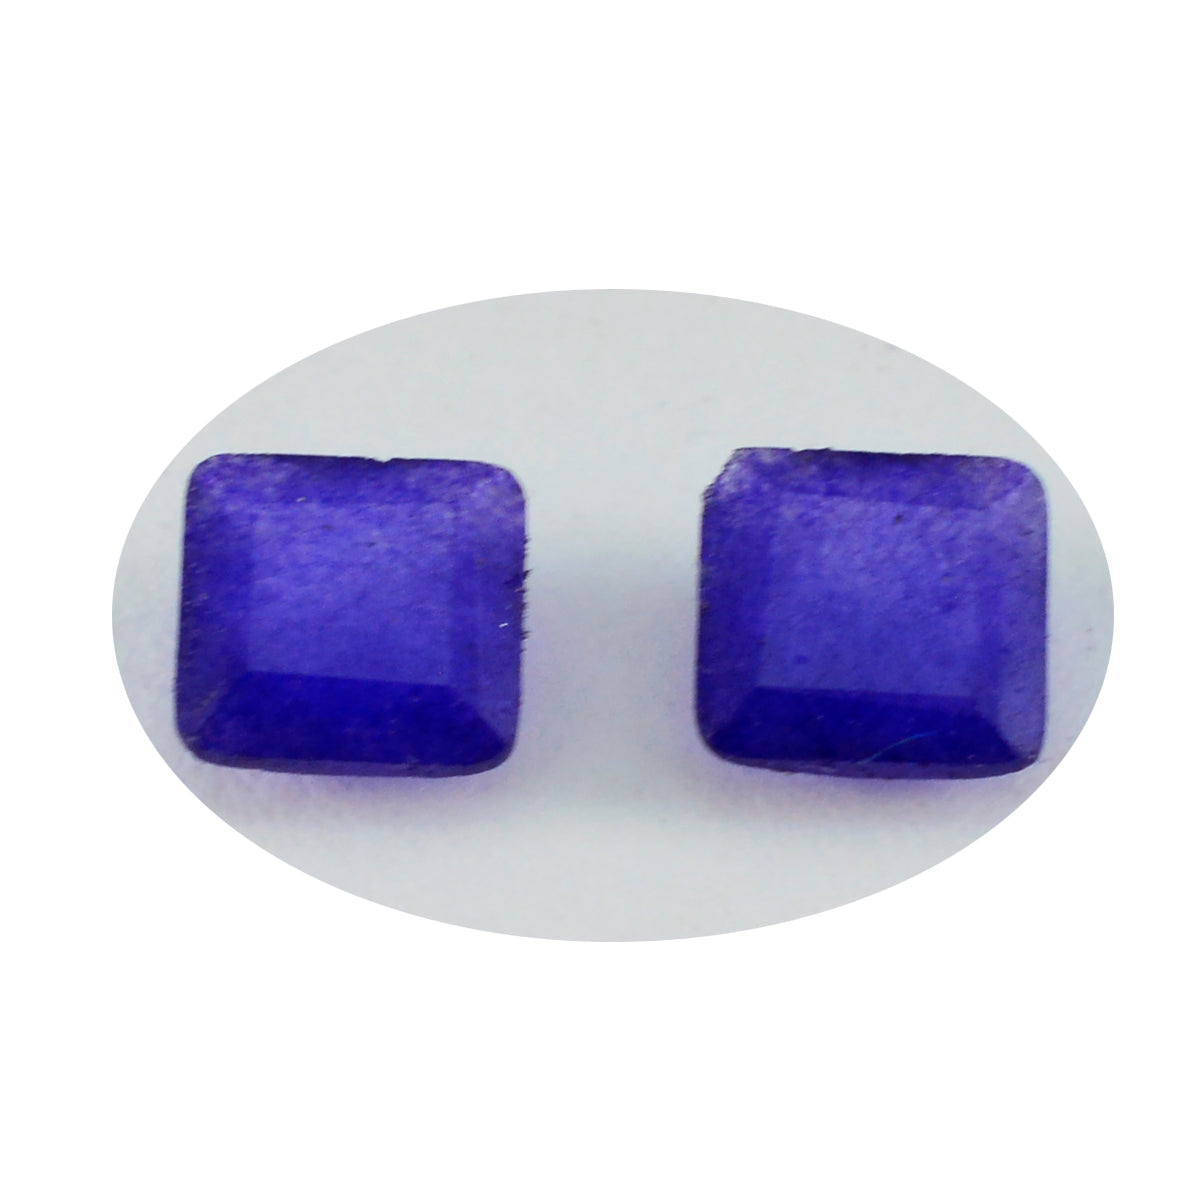 Riyogems 1 Stück echter blauer Jaspis, facettiert, 8 x 8 mm, quadratische Form, hübscher, hochwertiger, loser Edelstein